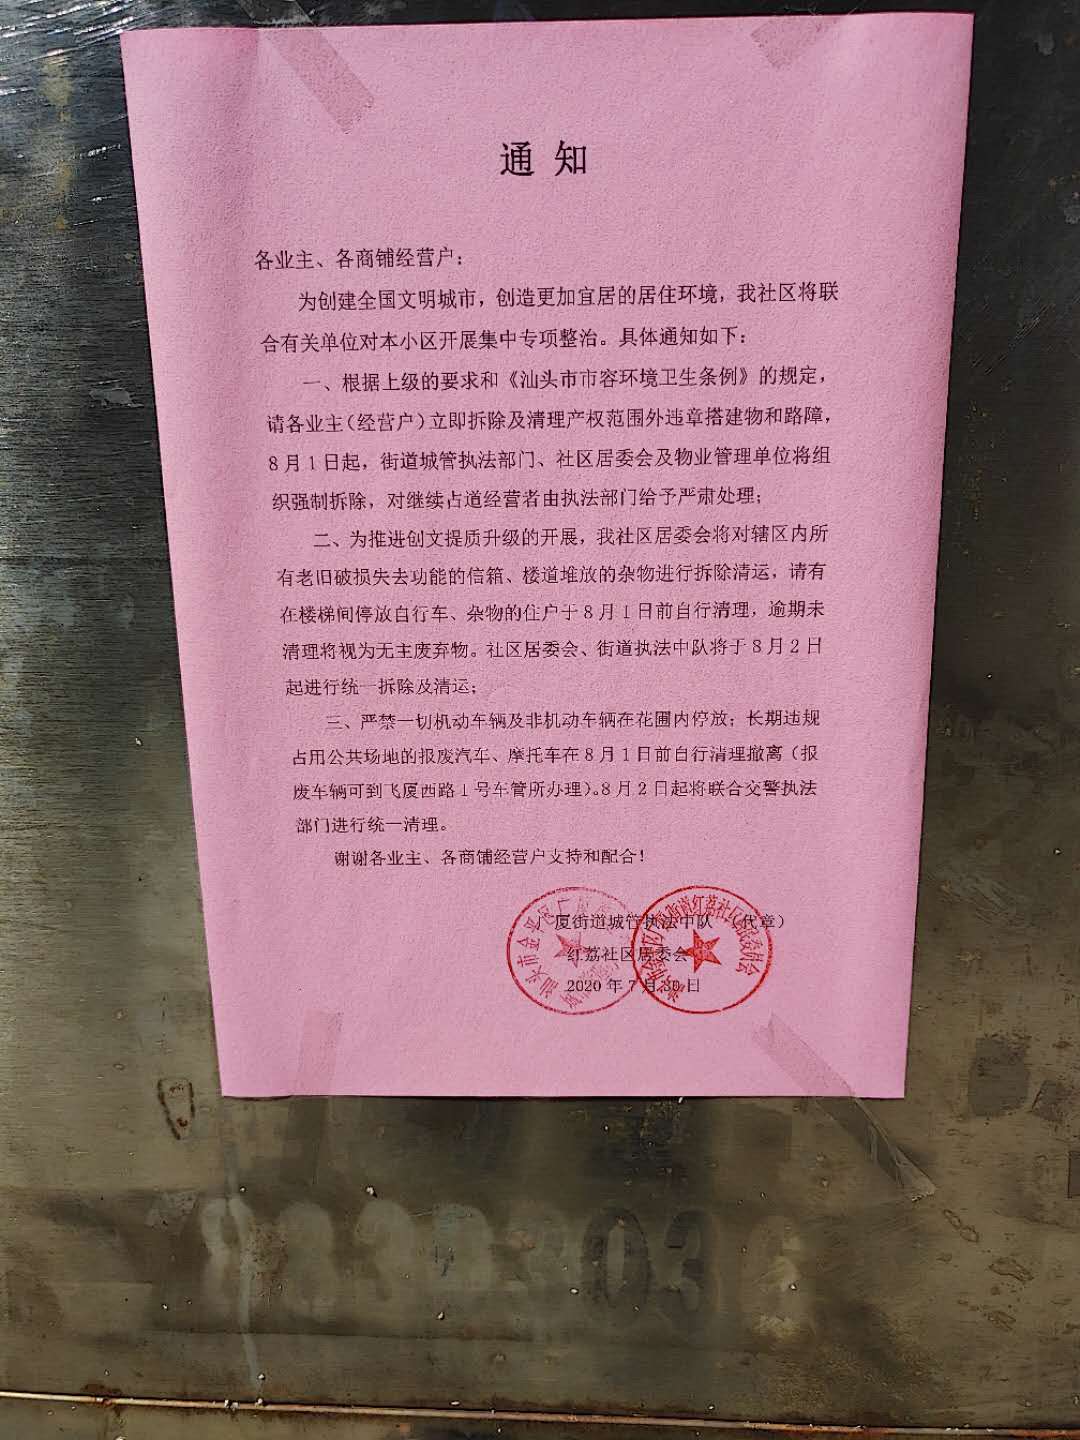 拆除违建，清理报废摩托！汕头广厦红荔社区8月1日起将进行整治